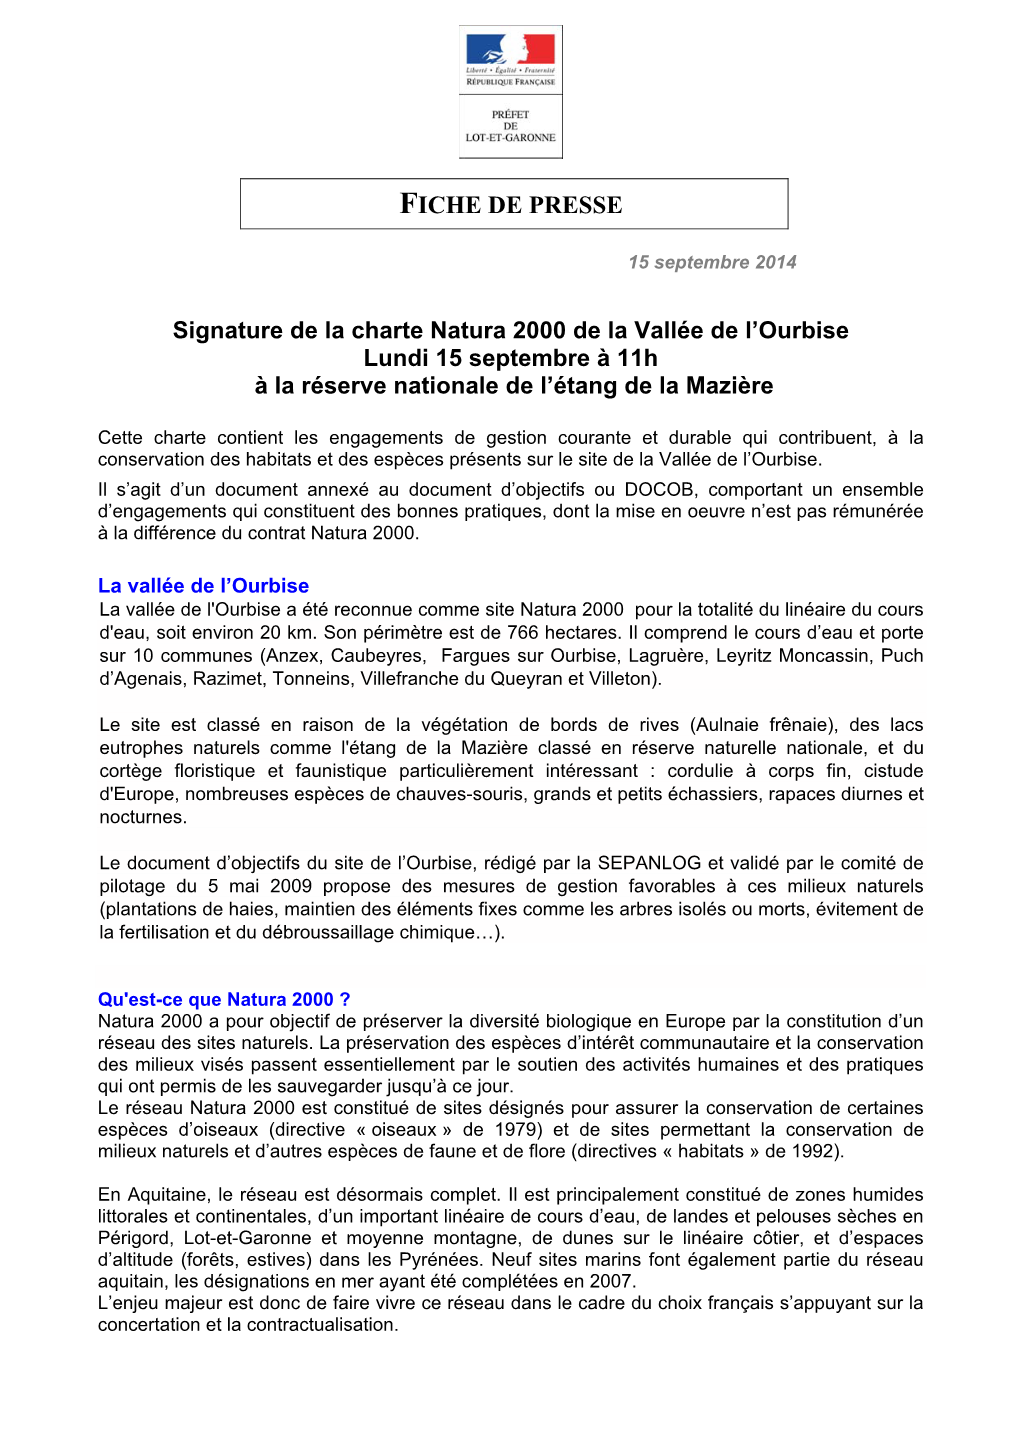 FICHE DE PRESSE : Signature De La Charte Natura 2000 De La Vallée De L